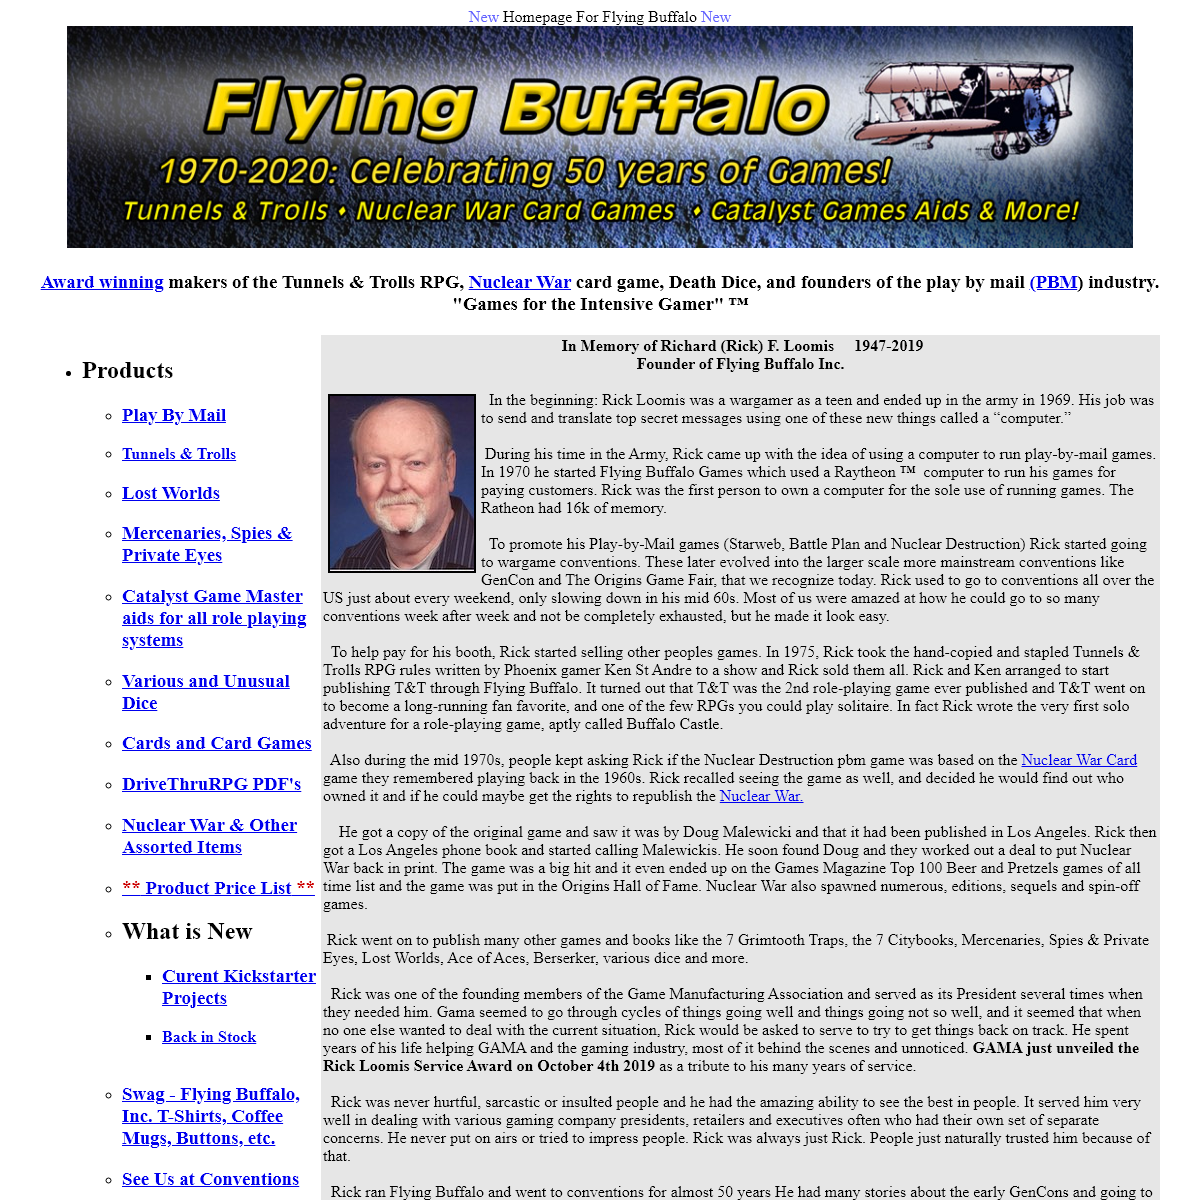 A complete backup of flyingbuffalo.com